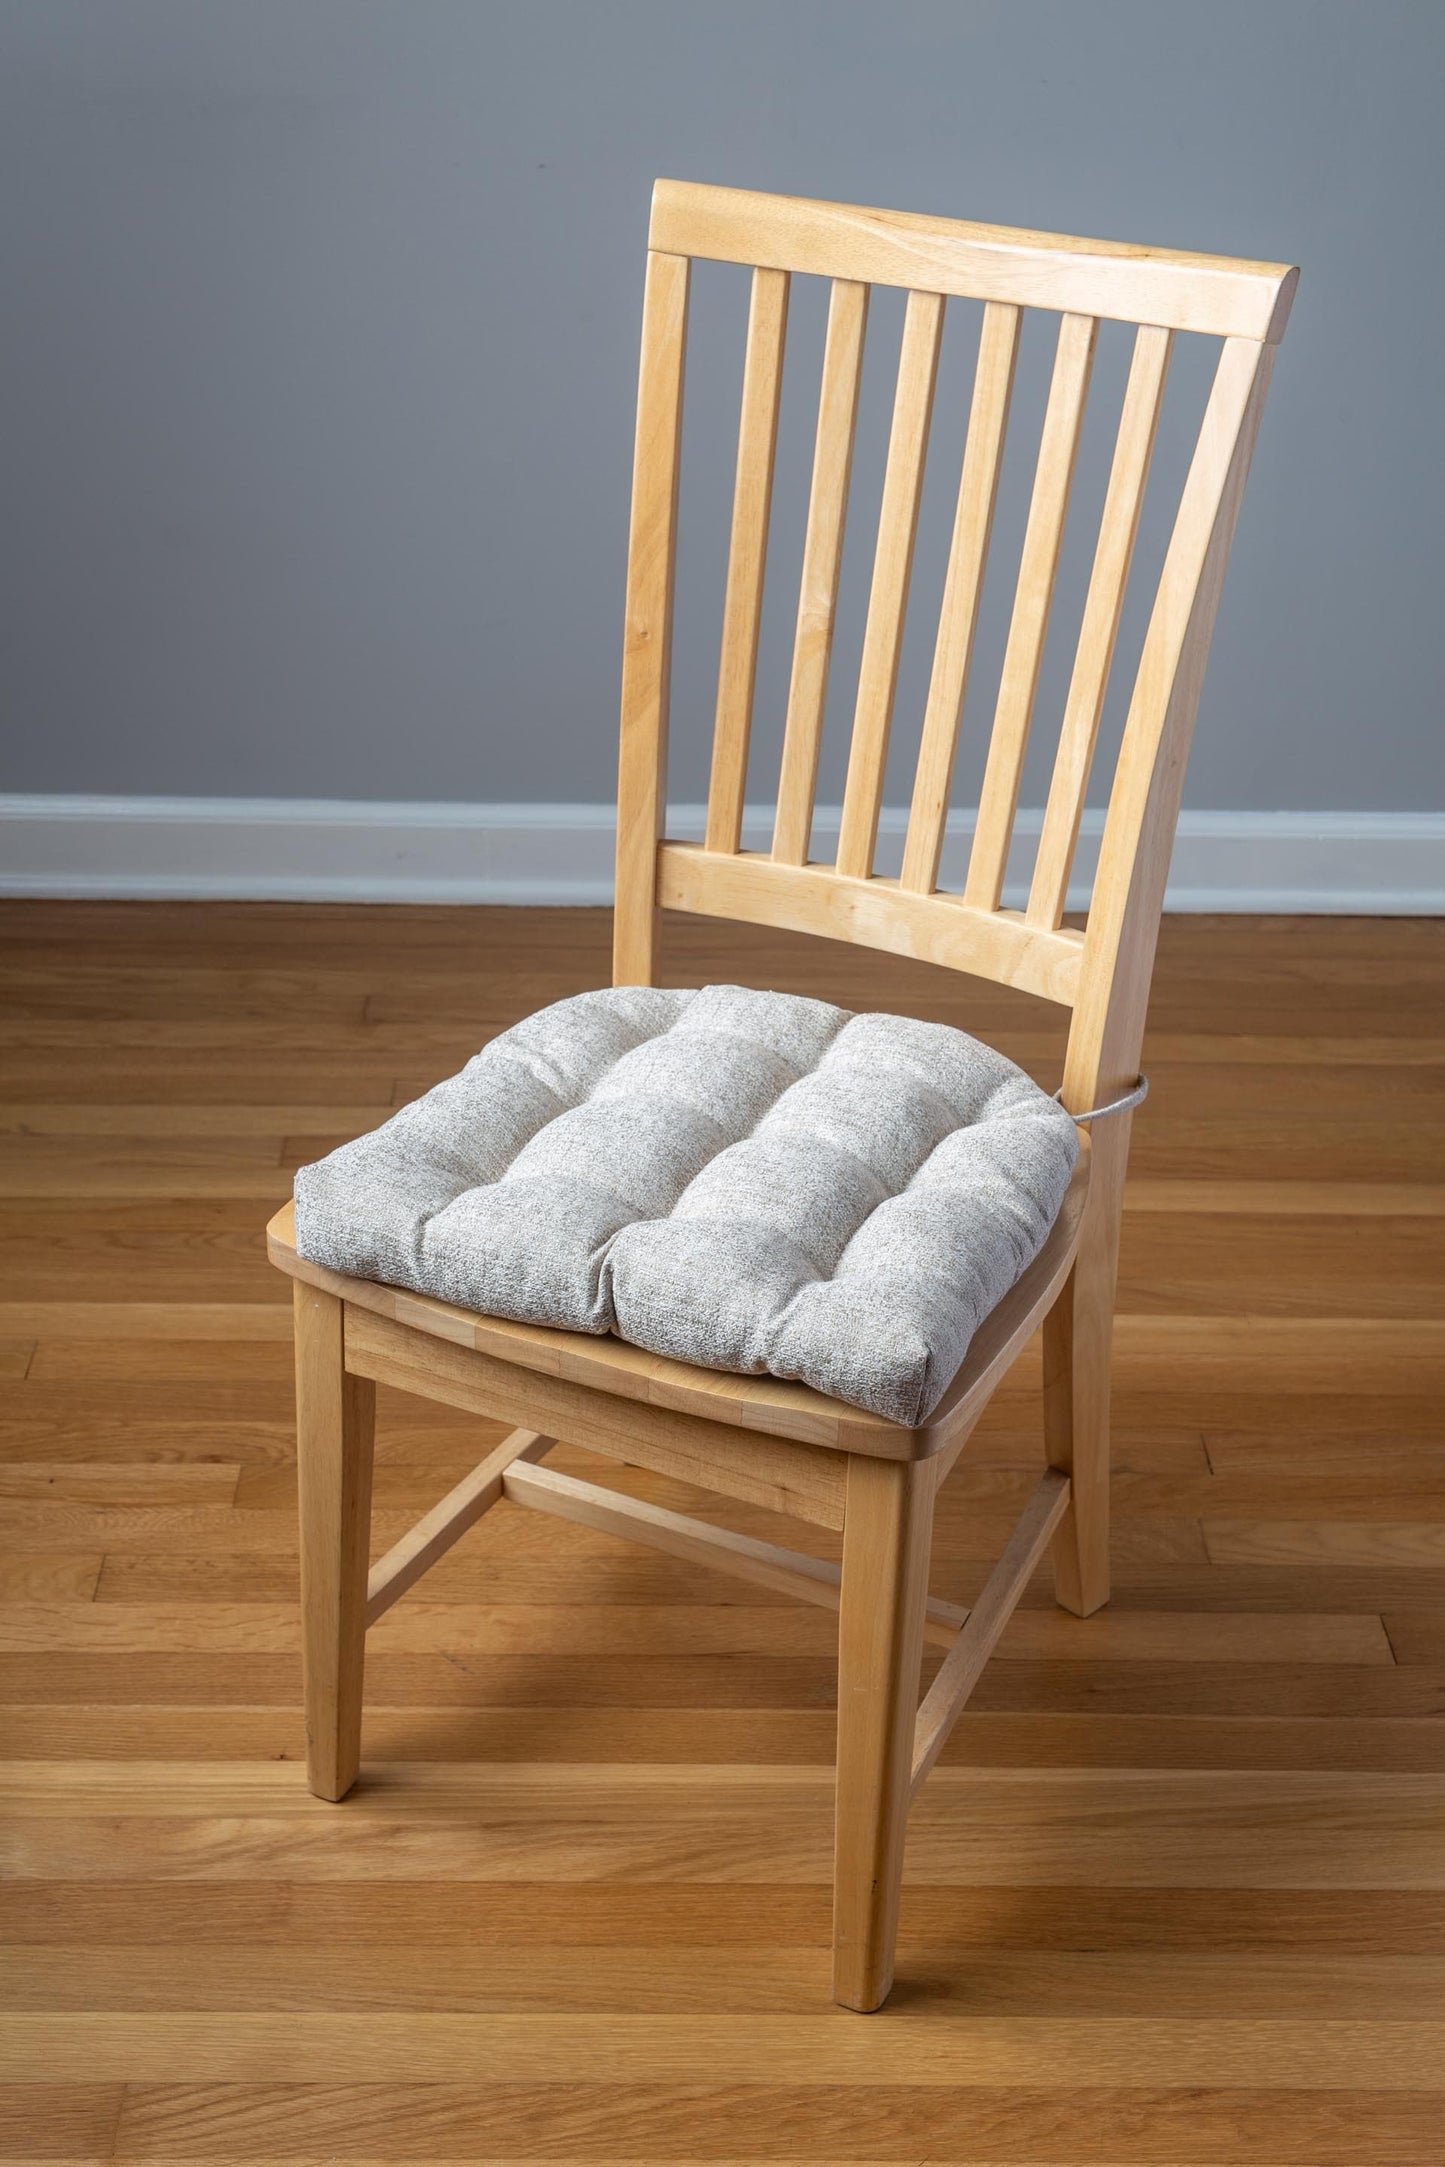 Granite Manchester Neutral Dining Chair Cushion - Barnett Home Decor - Tan